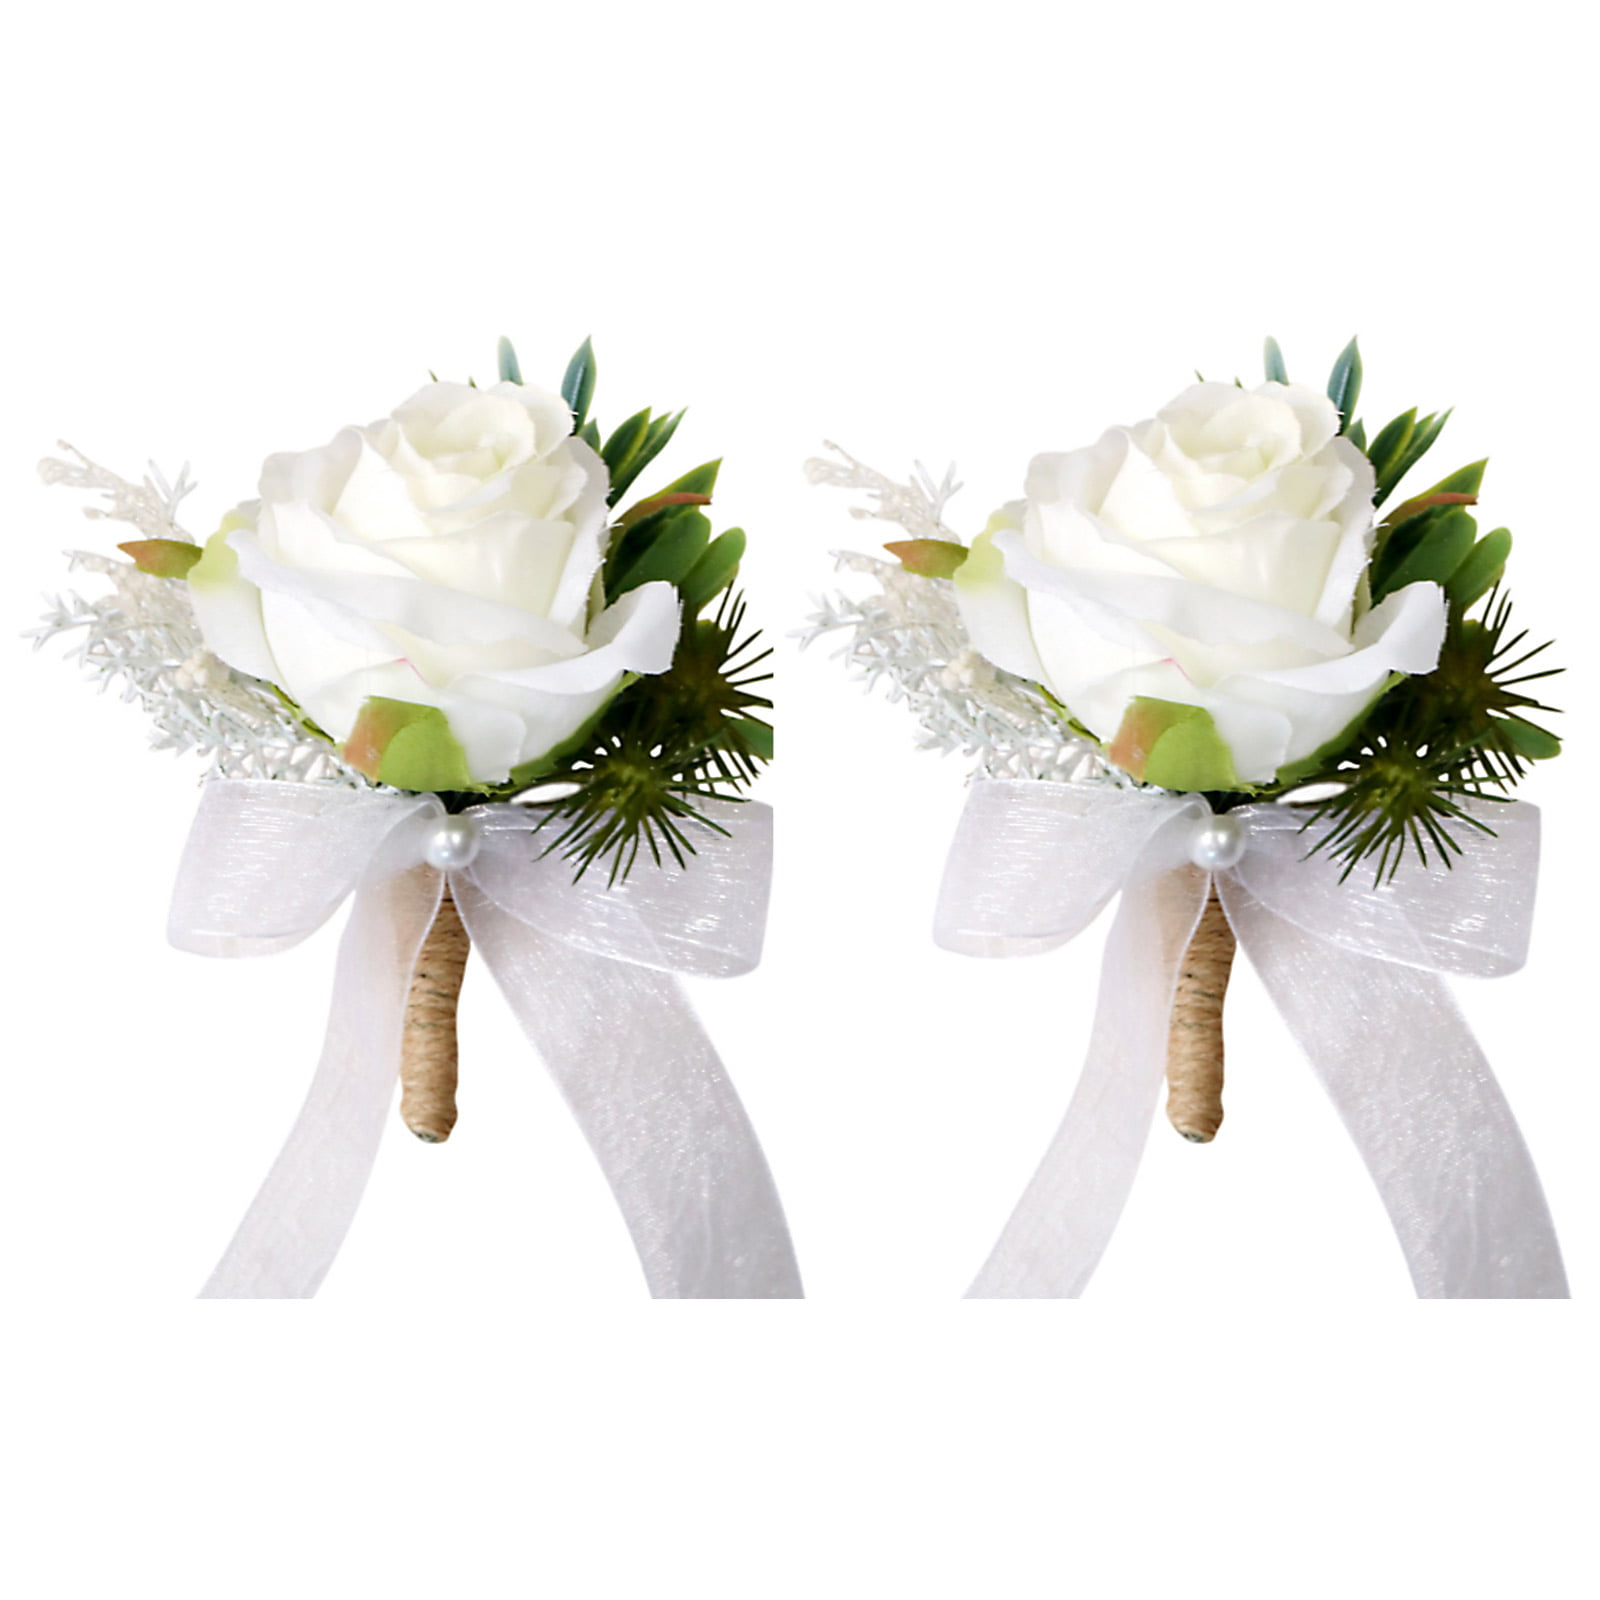 SILK Wedding flowers buttonhole groom best man guest choose quantity & colour 